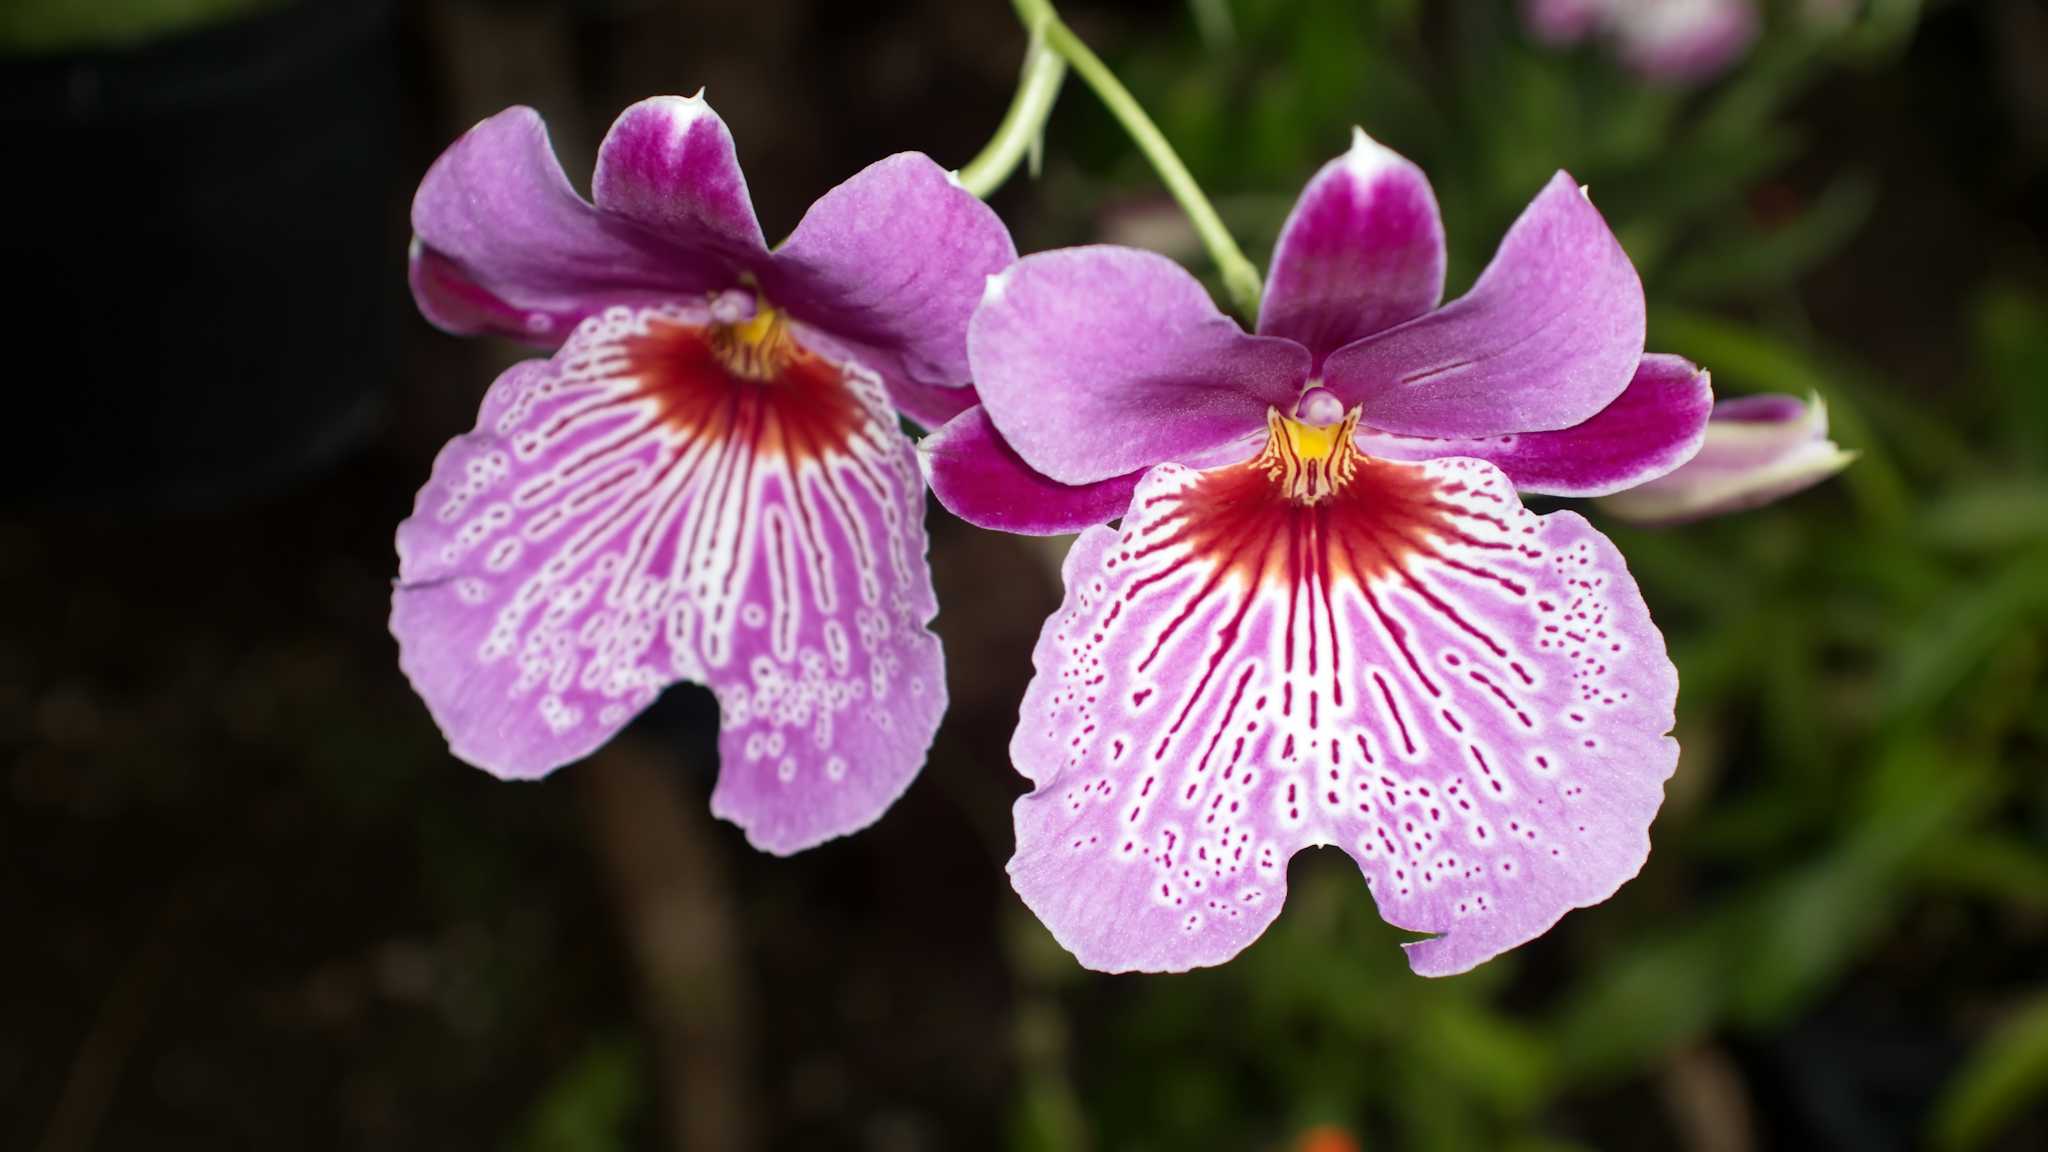 Ecuagenera Orchid Farm